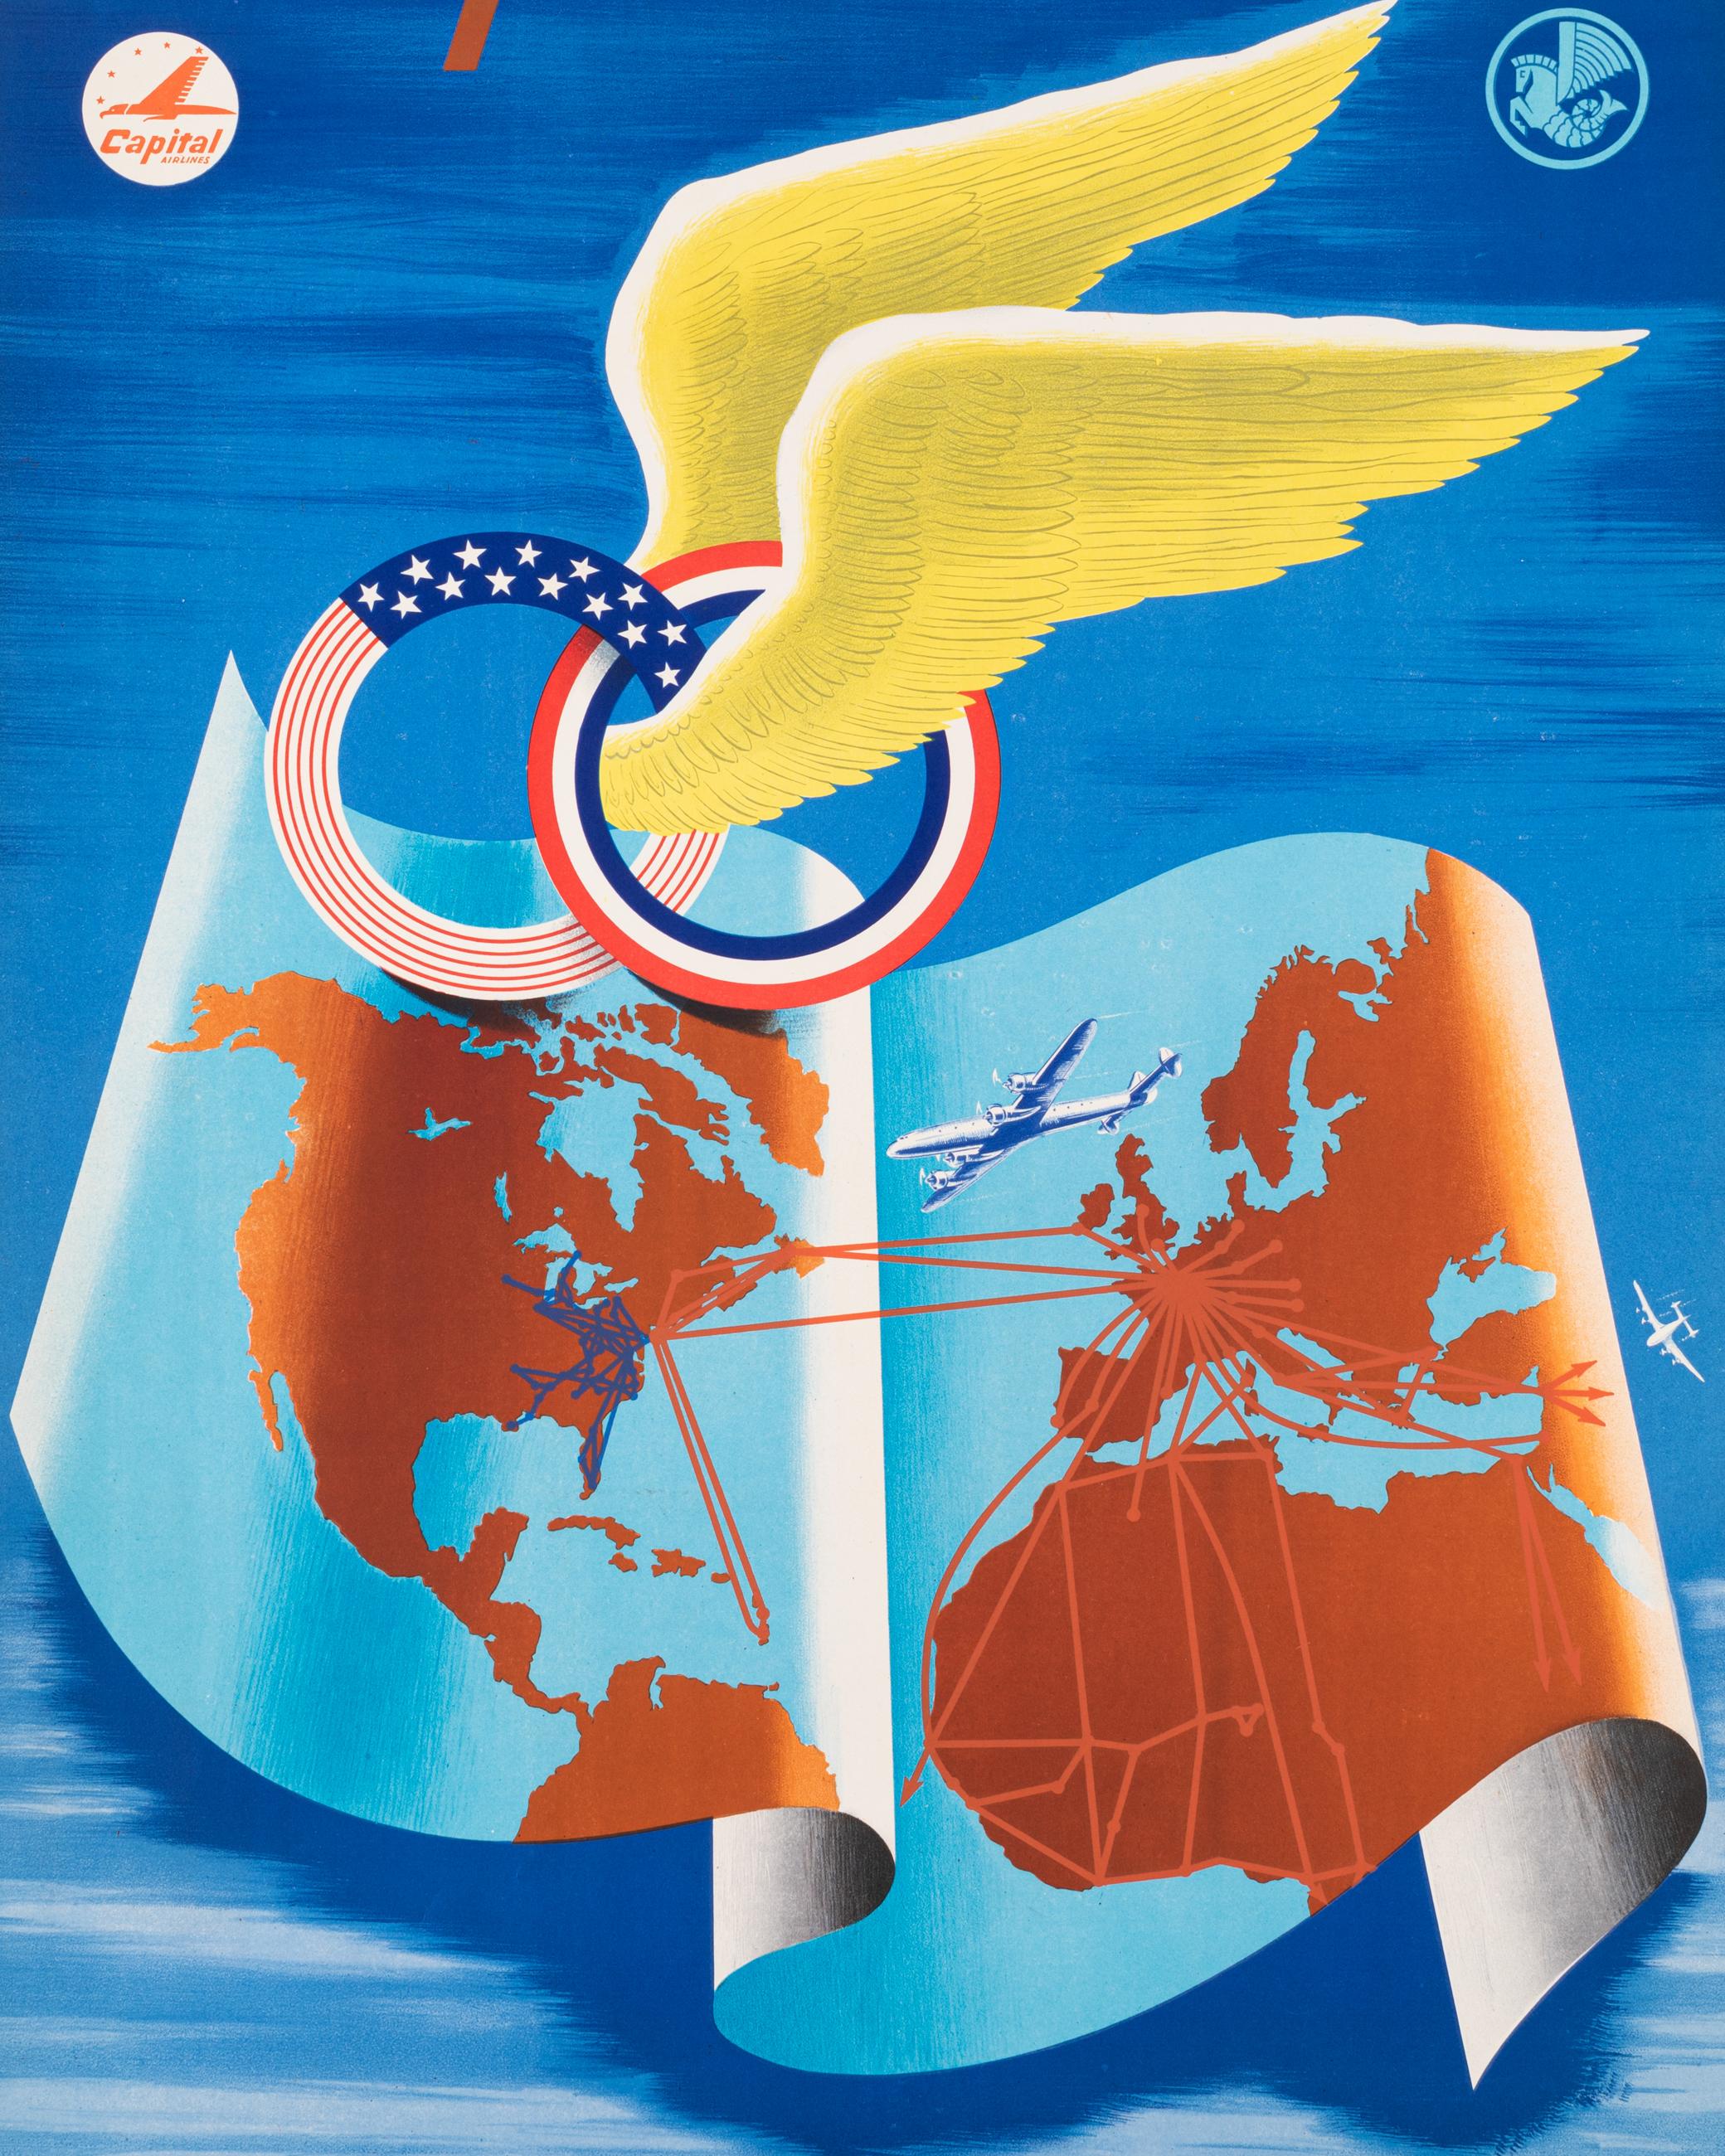 Original Vintage Poster für Air France und Capital Airlines von Plaquet aus dem Jahr 1952.

Künstler: Plaquet
Titel: Air France Capital Airlines - Zwei Fluglinien in einem einzigen Flugzeug
Datum: 1952
Größe (B x H): 24,6 x 39.4 in / 62,5 x 100